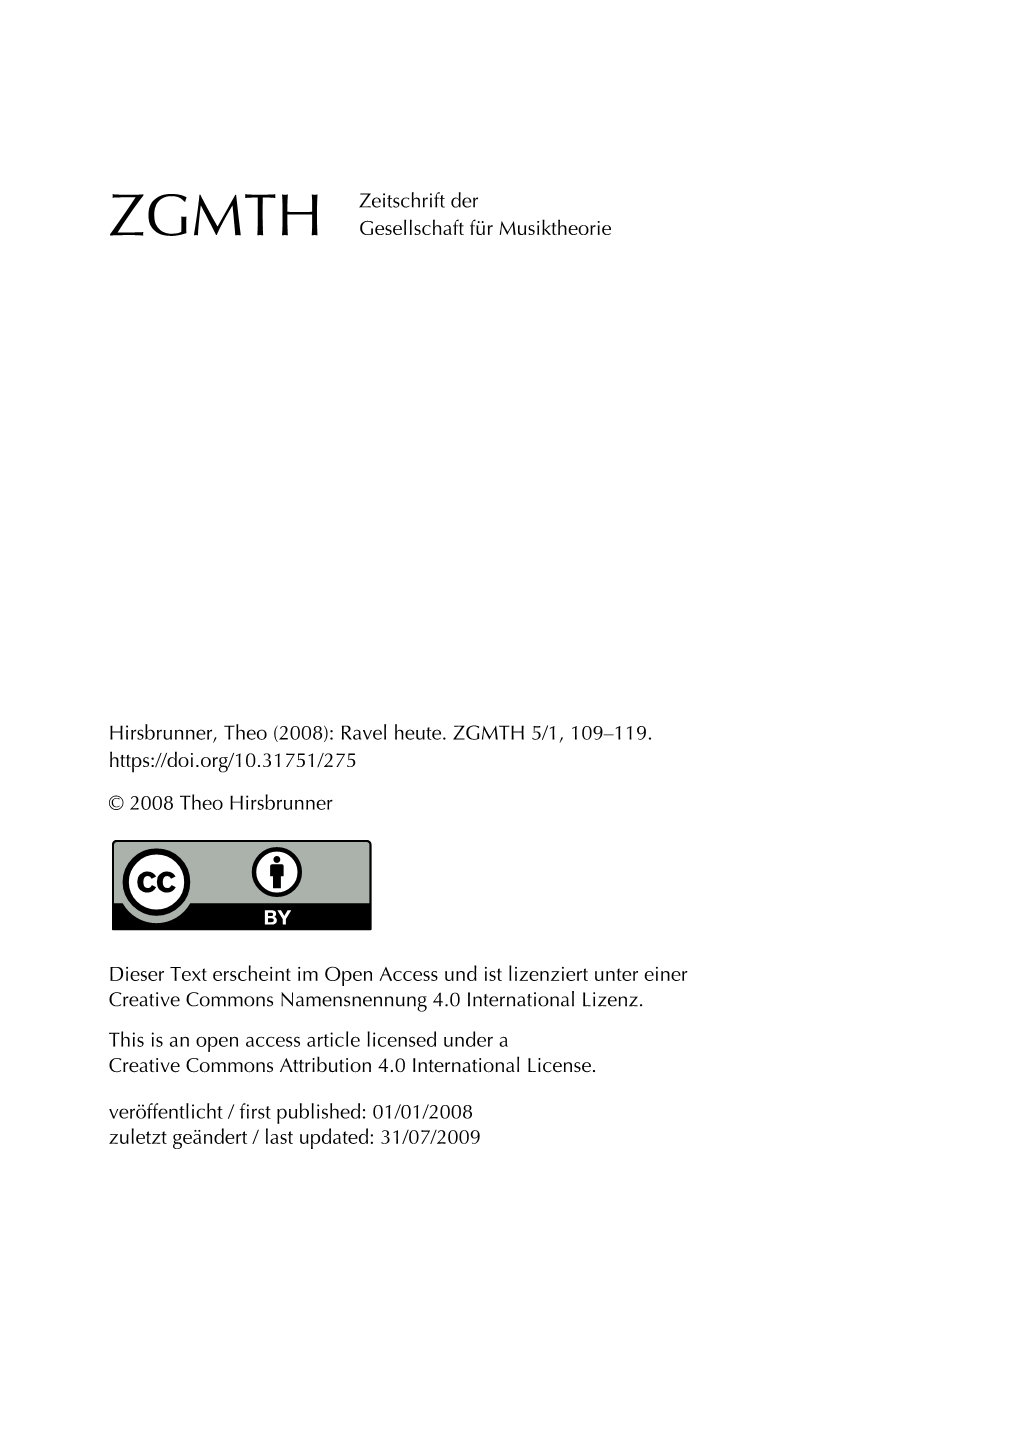 Hirsbrunner, Theo (2008): Ravel Heute. ZGMTH 5/1, 109–119